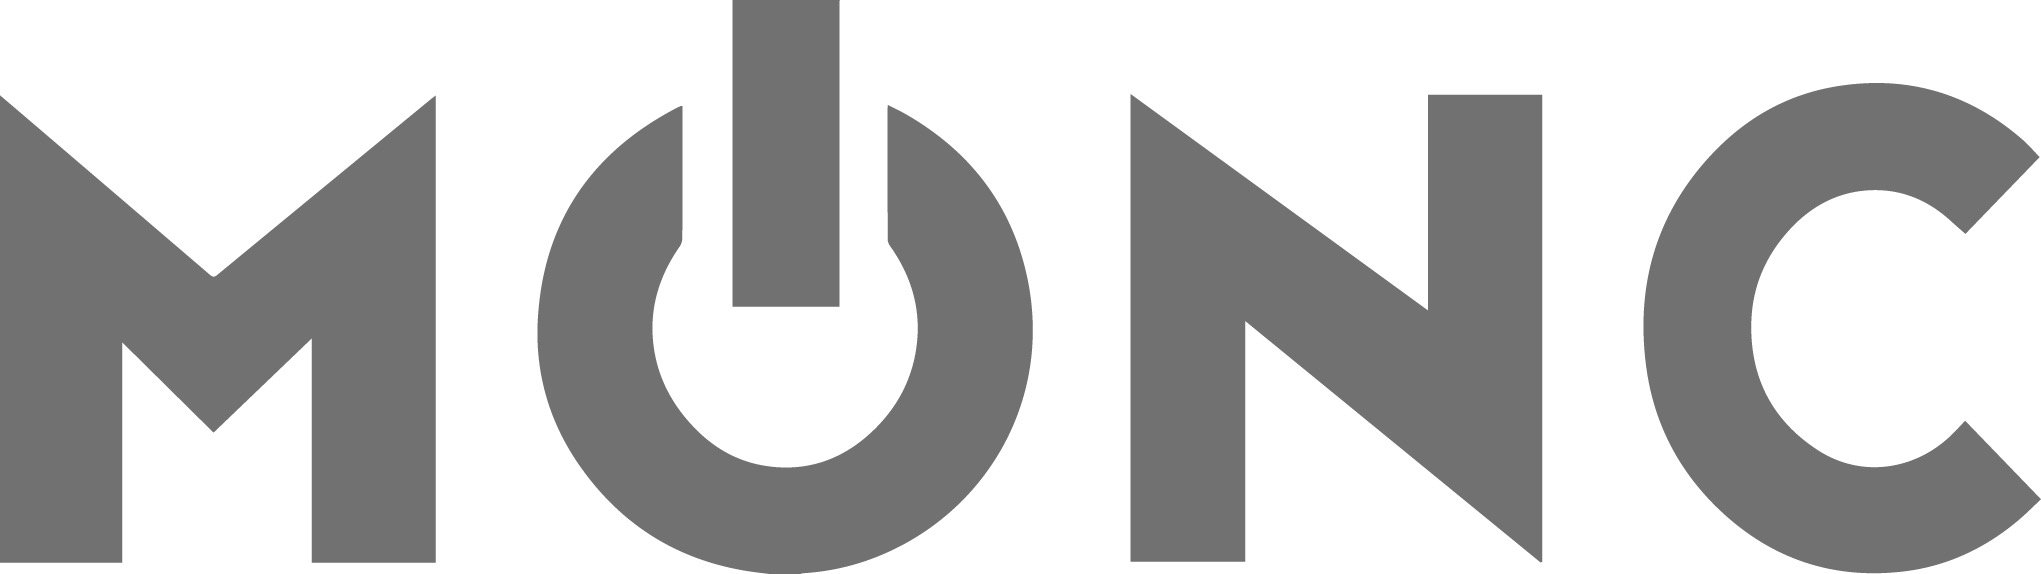 MONC logo.jpeg